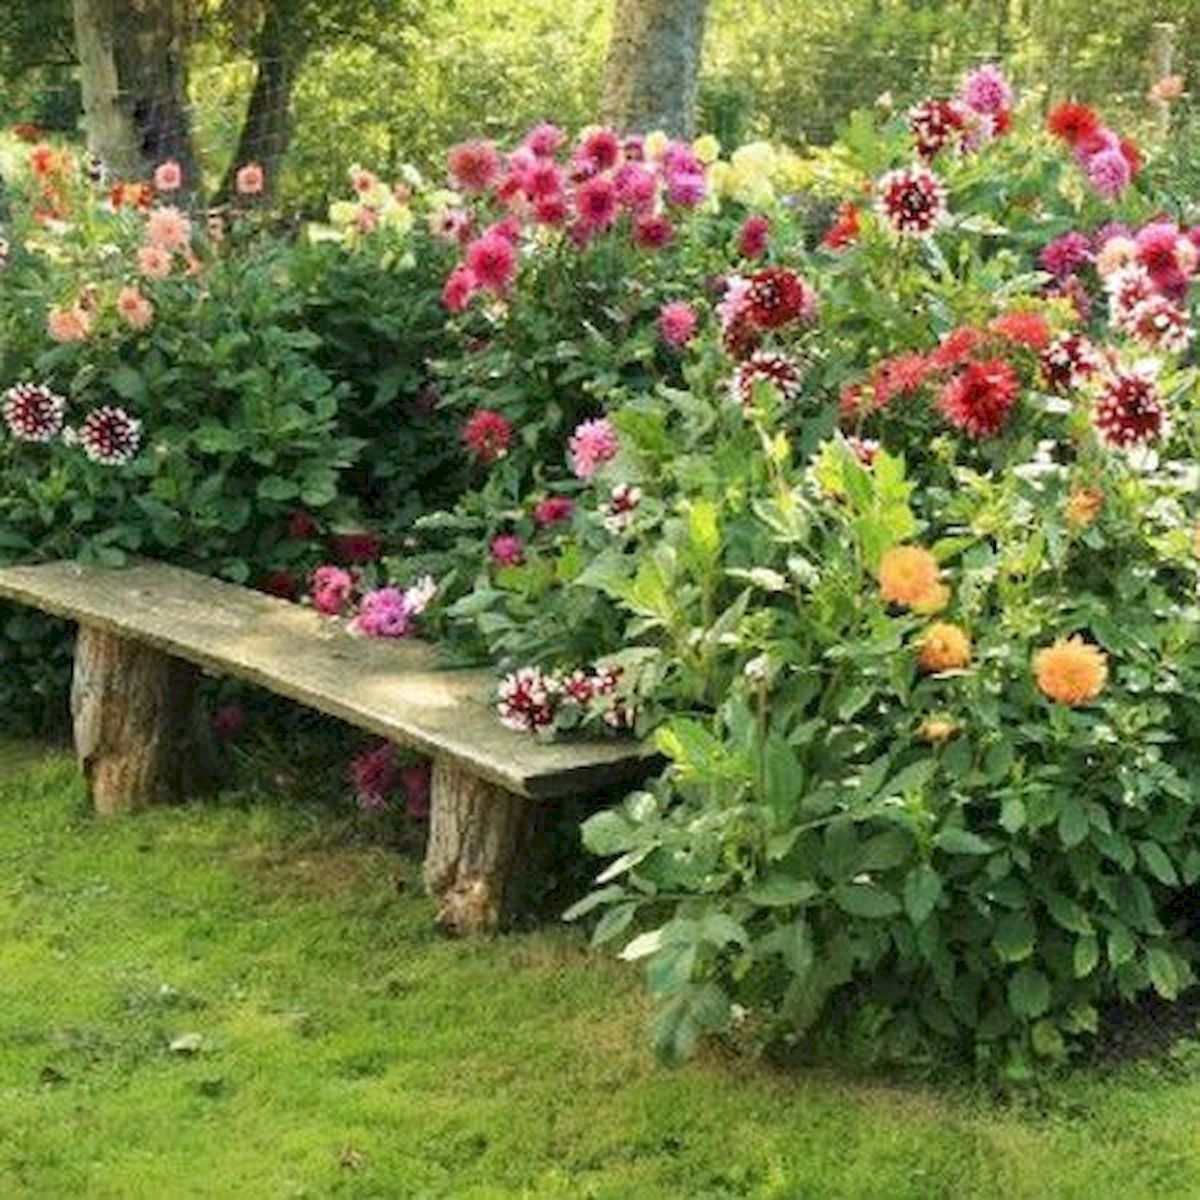 50 Beautiful Flower Garden Design Ideas #FlowerGarden - 50 Beautiful Flower Garden Design Ideas #FlowerGarden -   18 beauty Flowers garden ideas